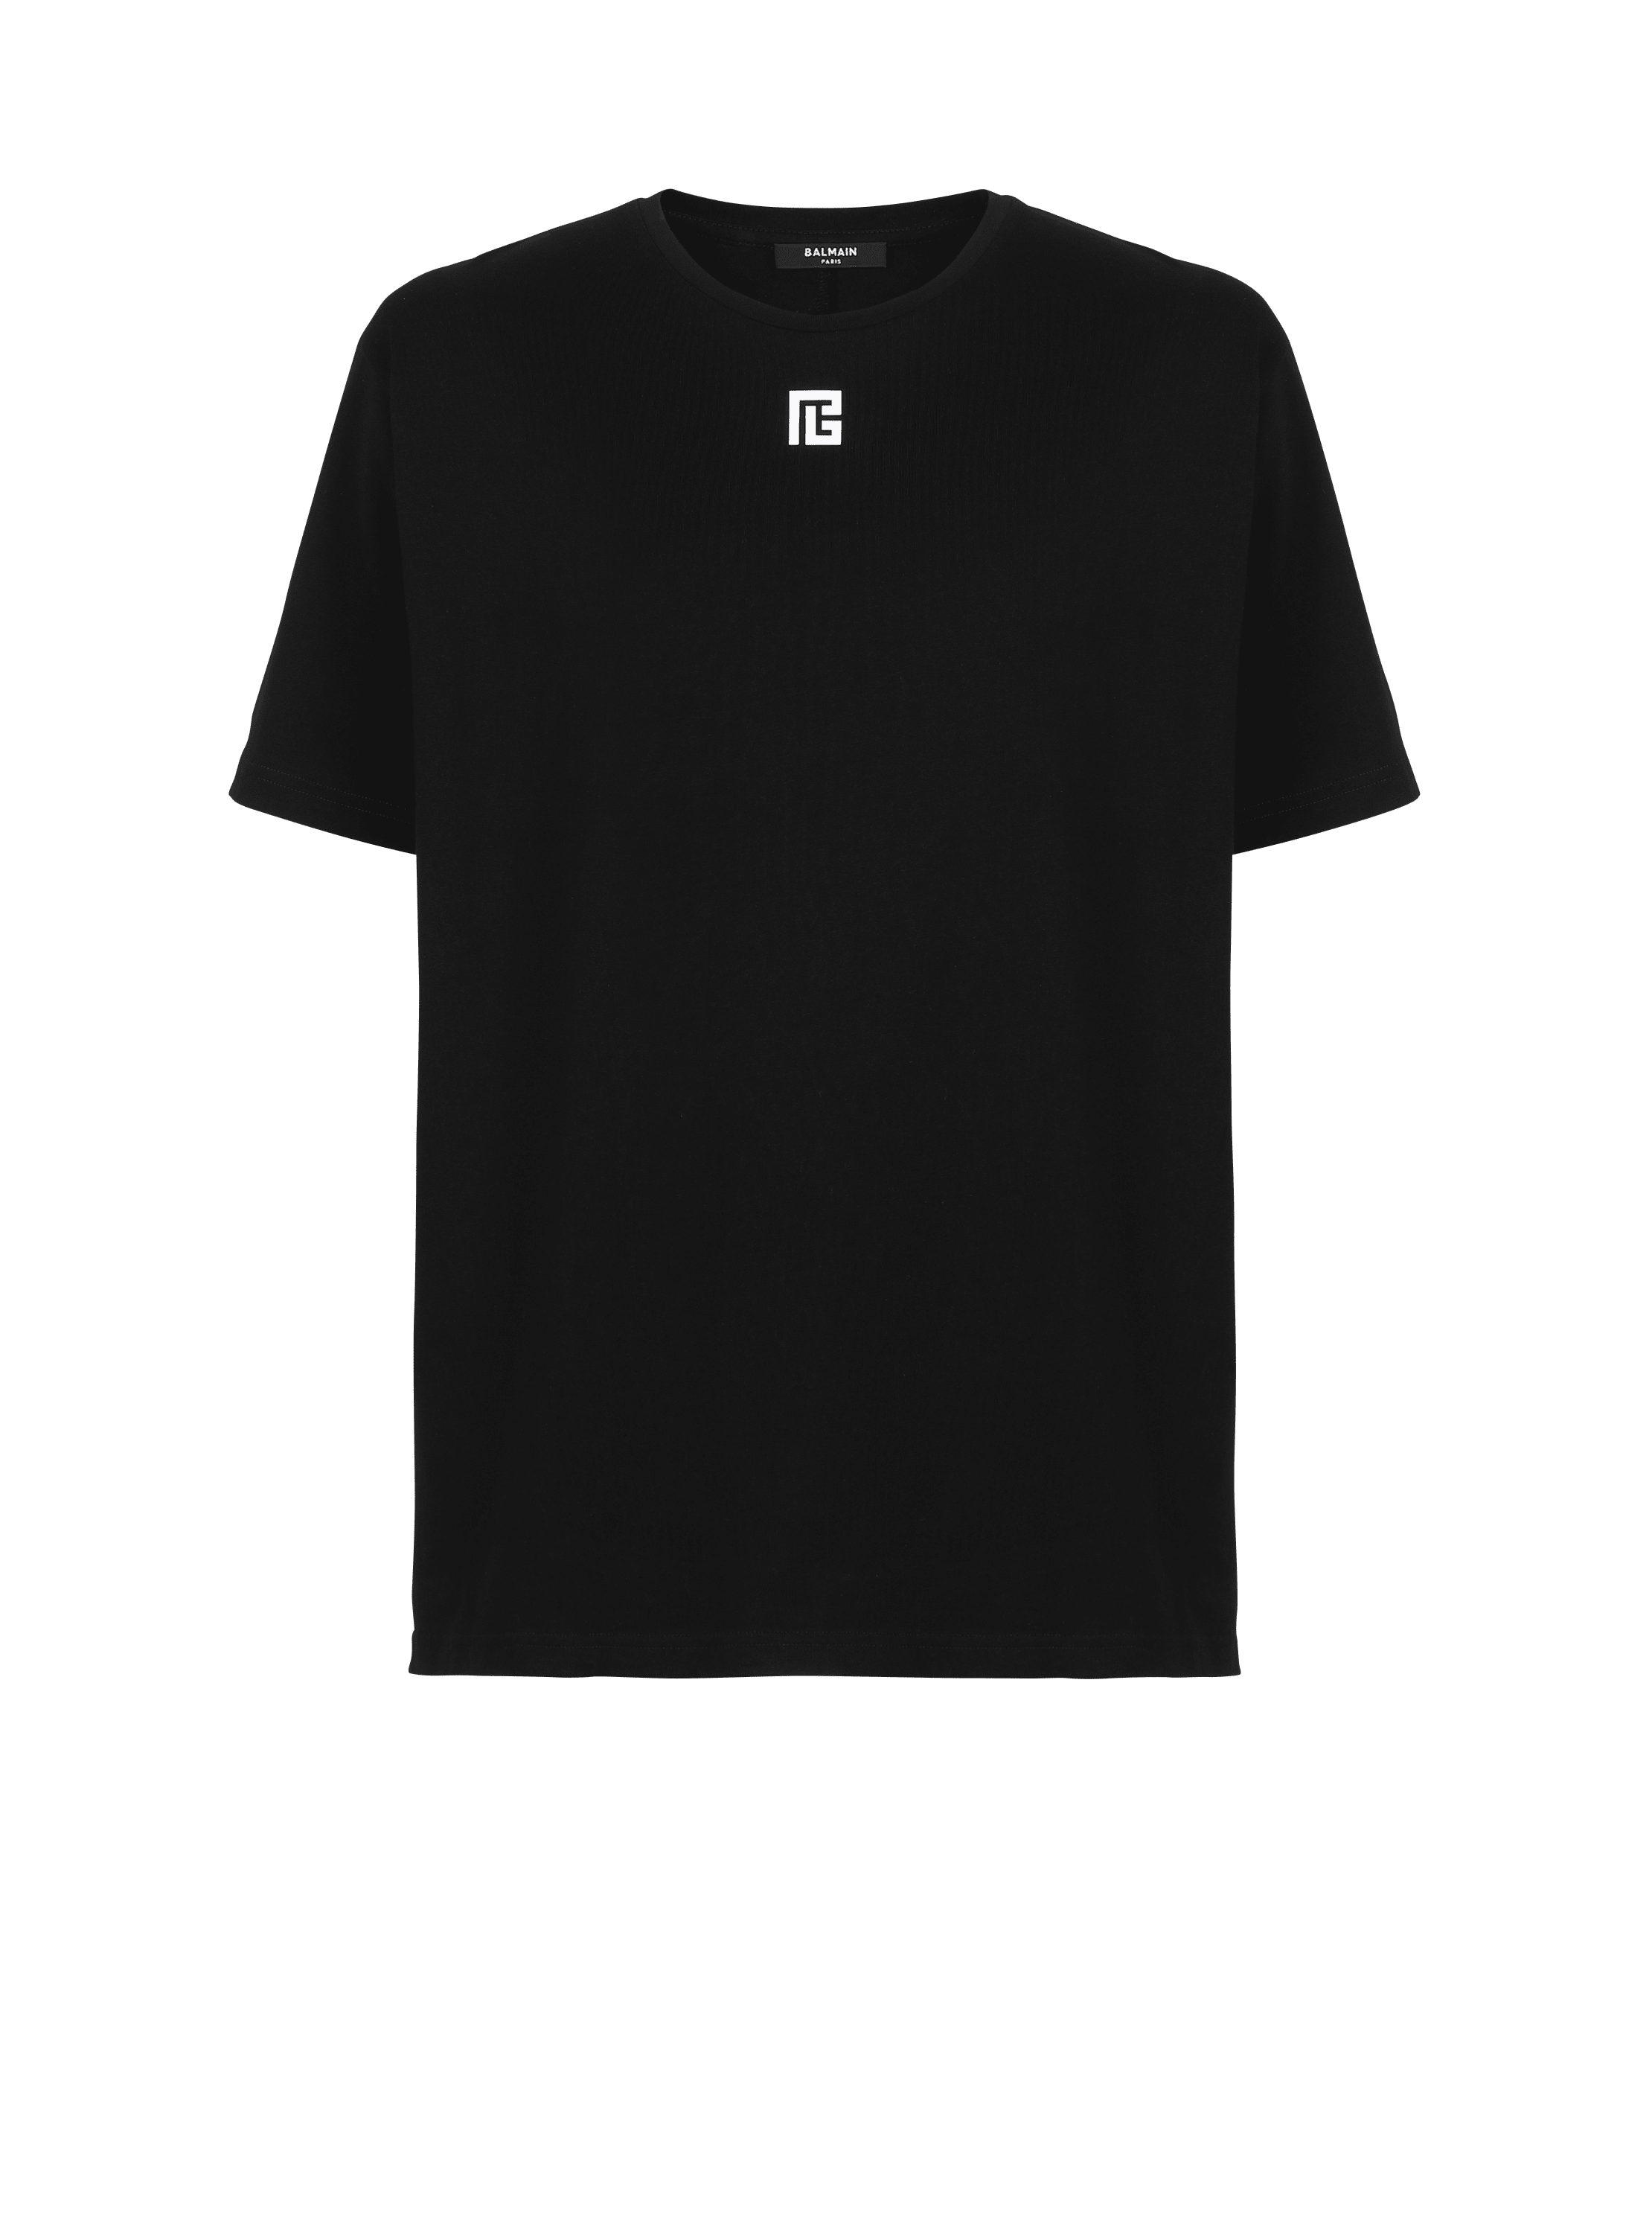 Oversize-T-Shirt aus Baumwolle mit großem Balmain Logo-Print, schwarz, hi-res